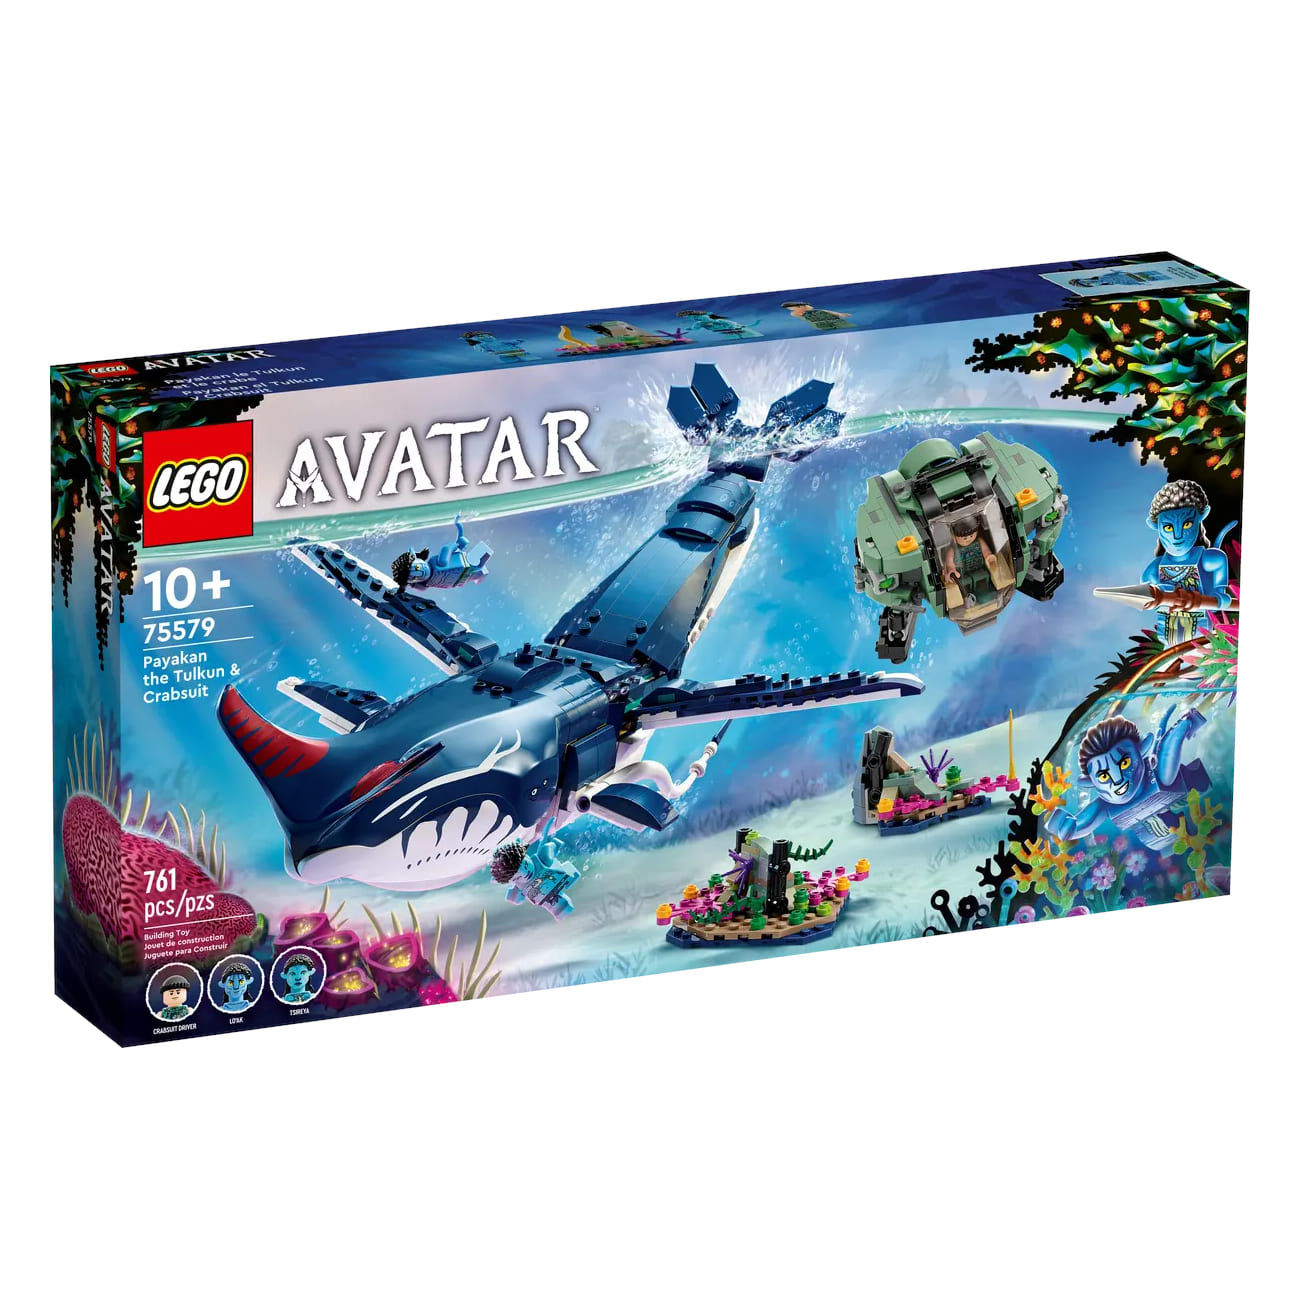 Конструктор LEGO Avatar Payakan the Tulkun & Crabsuit 75579, 761 деталь смит ш аватар путь тсу’тея